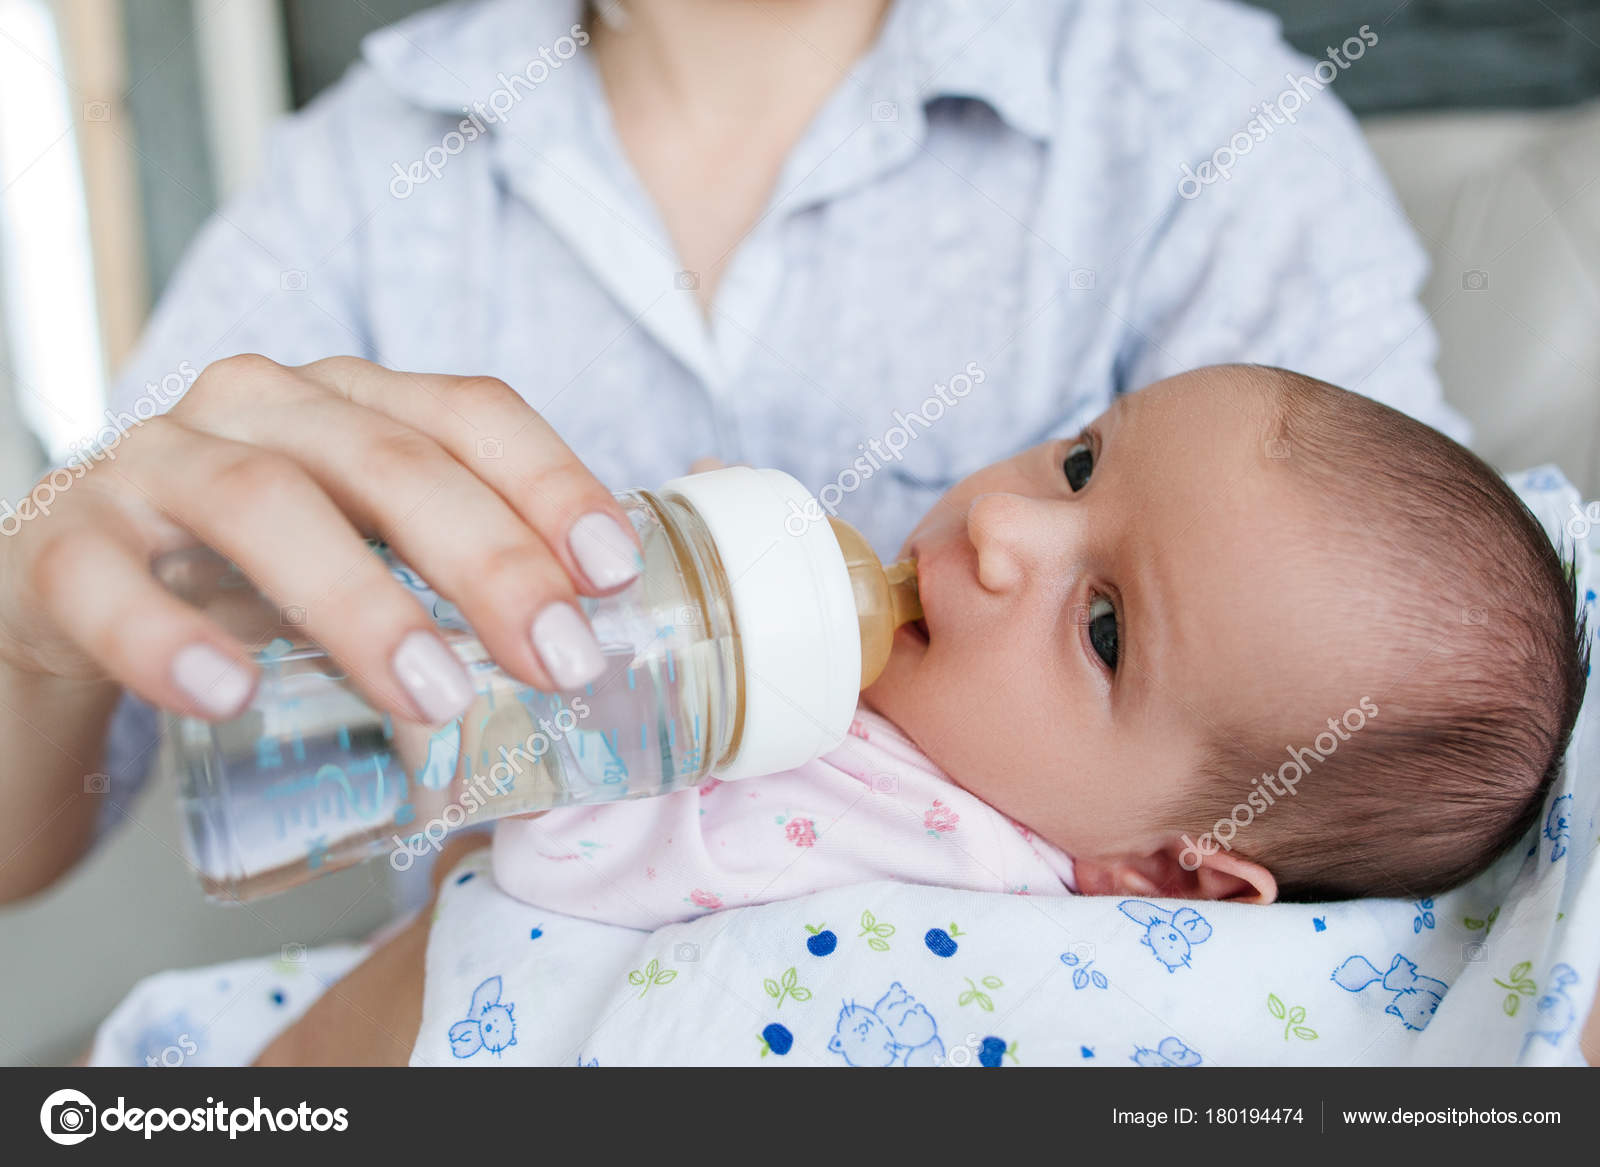 Нужно давать воду новорожденному при грудном. Кормление из бутылочки водой грудничка. Допаивать грудничка водой. Грудничок в воде. Грудной ребенок в воде.